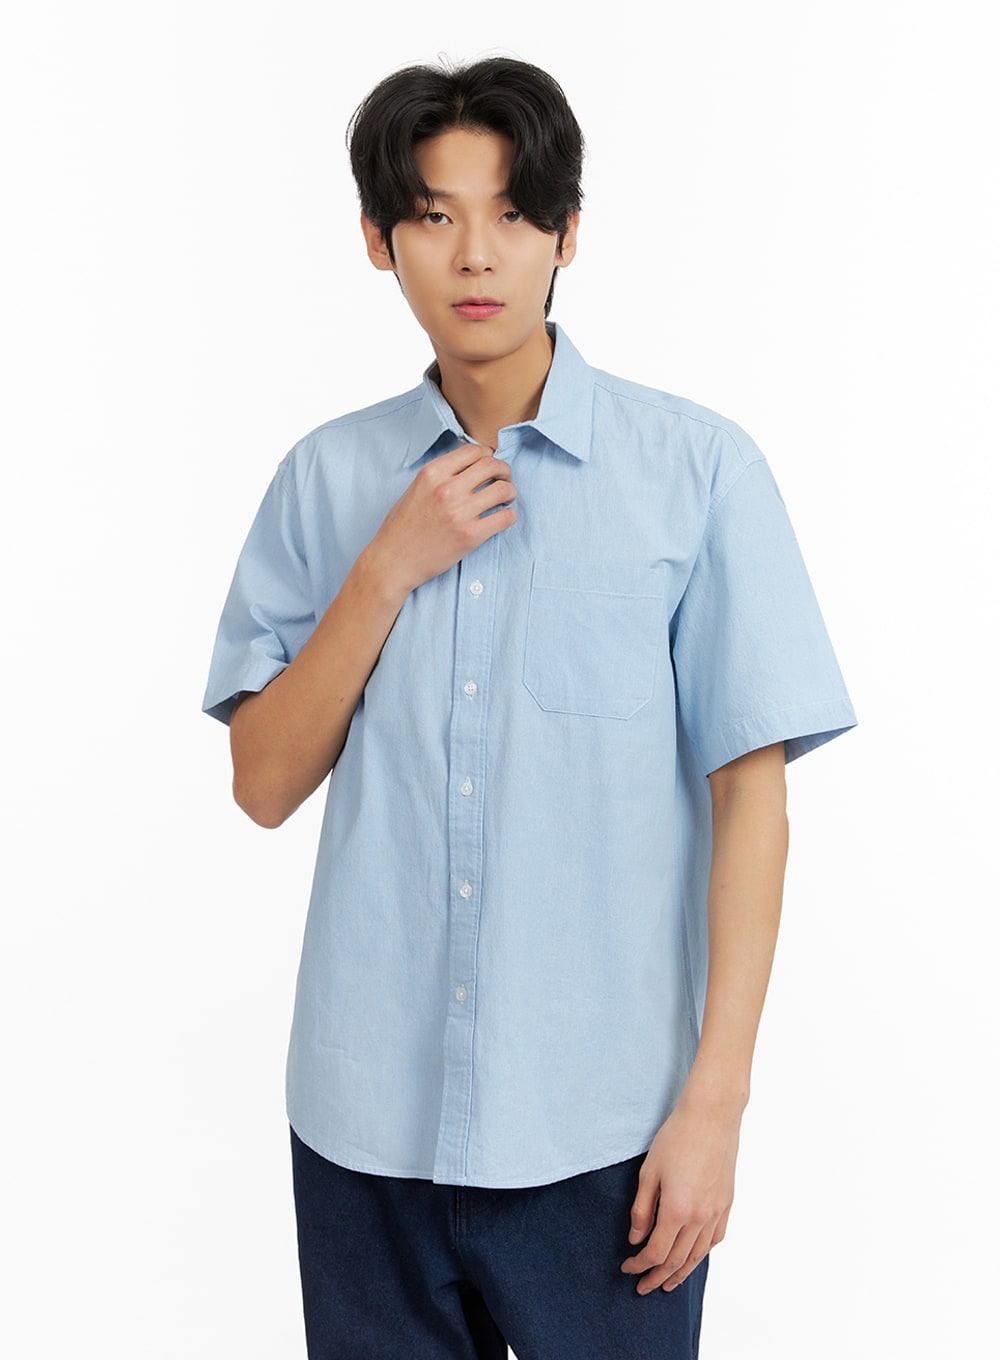 mens-denim-short-sleeve-buttoned-shirt-ia402 / Light blue